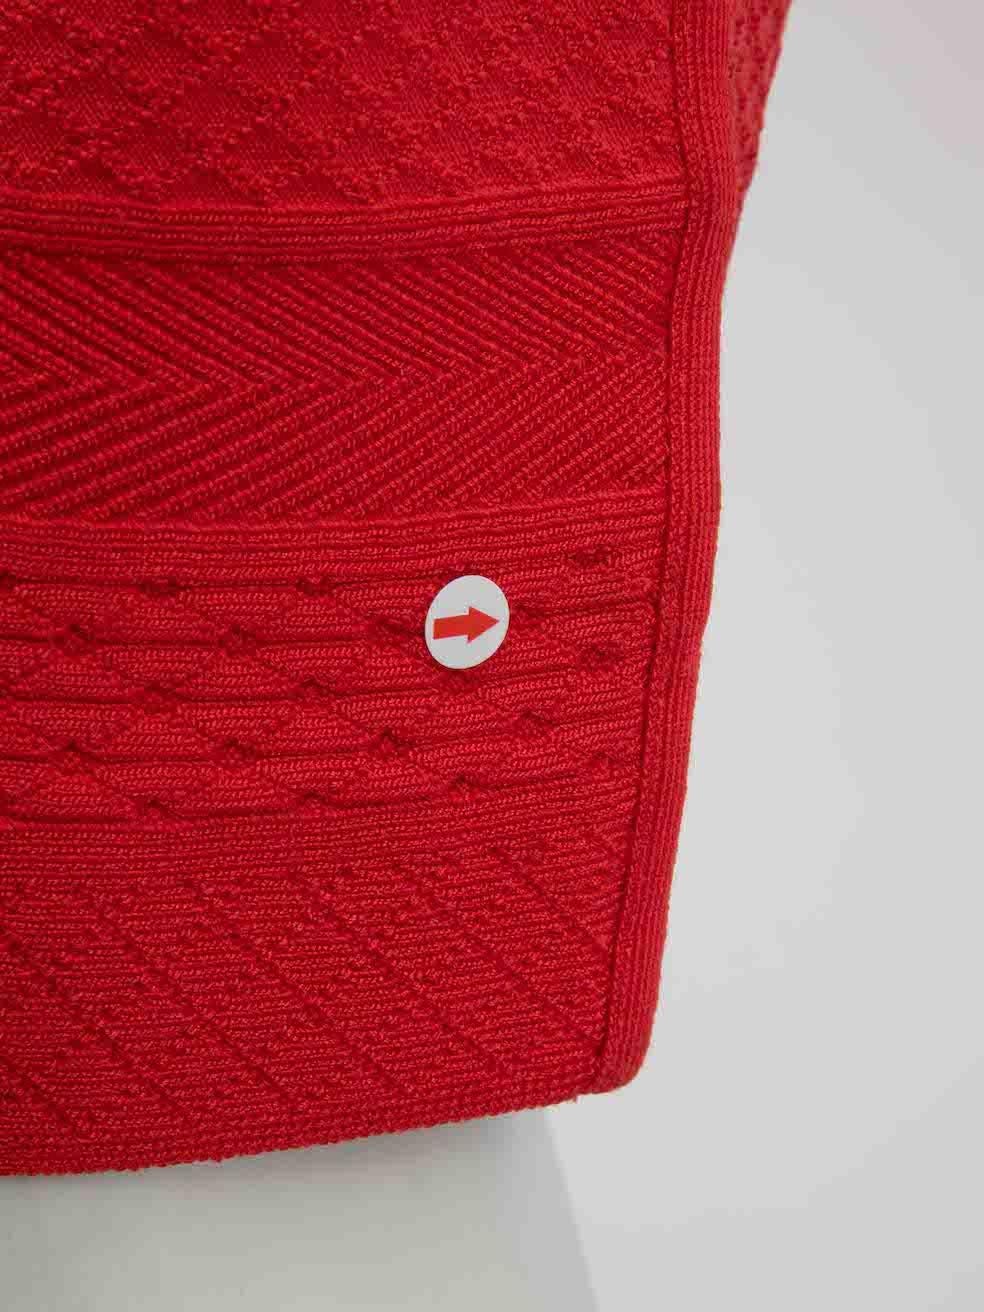 Herve Leger Red V-Neck Knee Length Knit Dress Size S For Sale 2